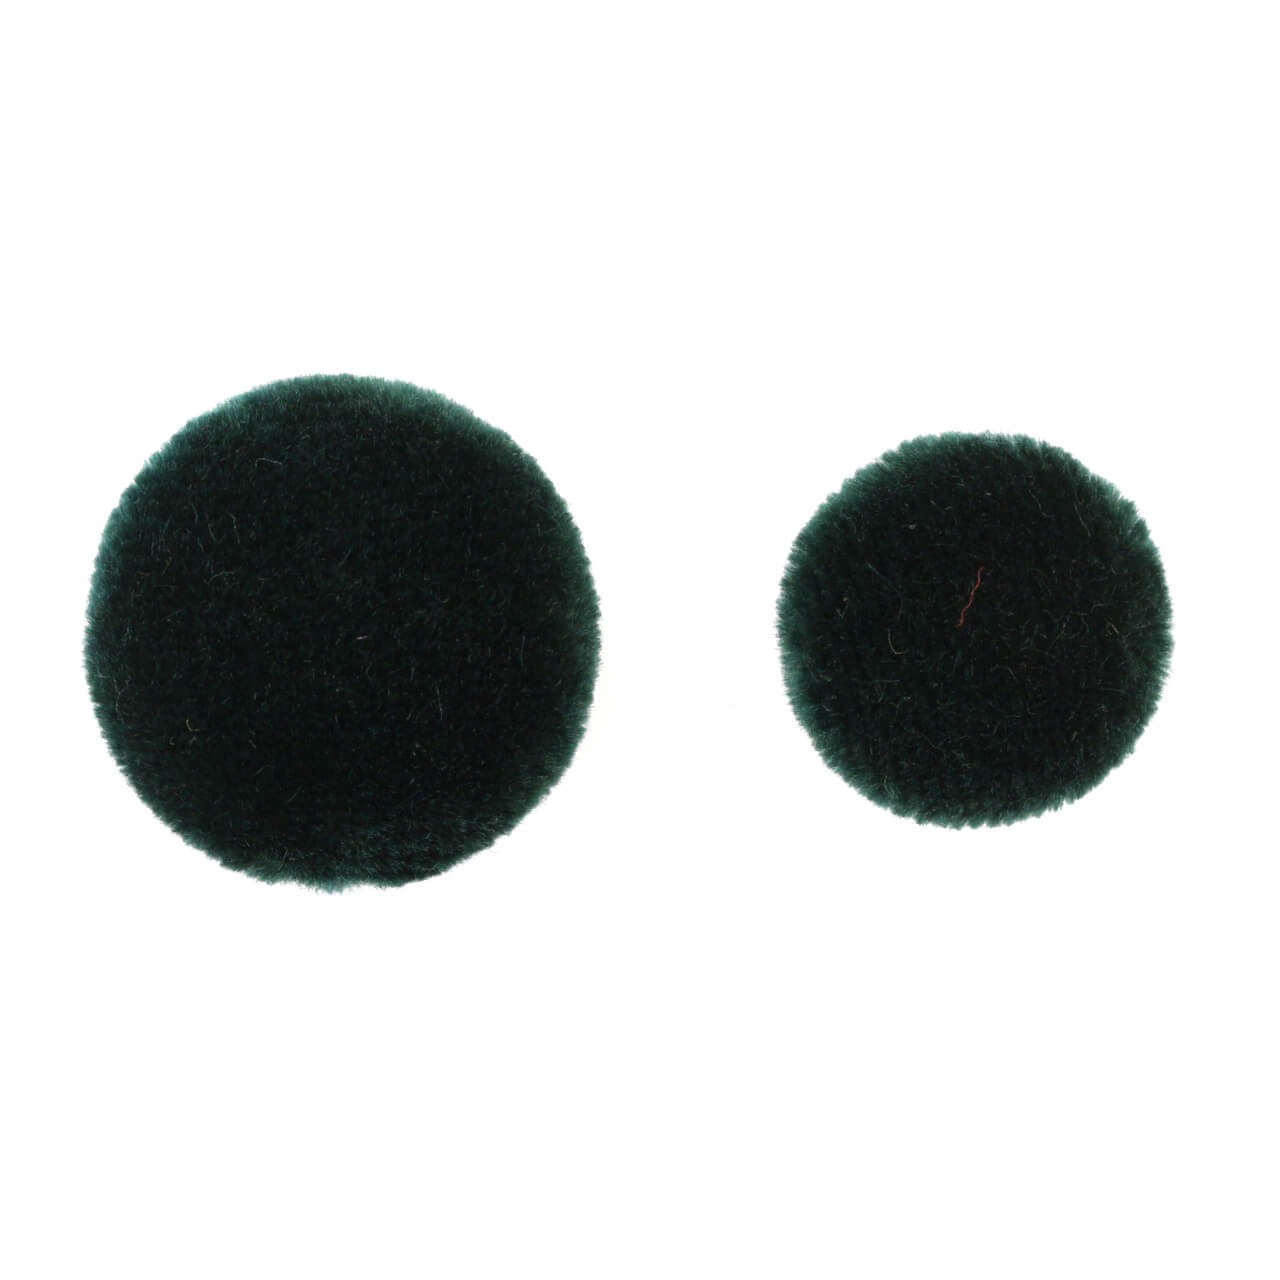 Пуговицы  Ø2,3 см, цвет Зеленый, фото 1